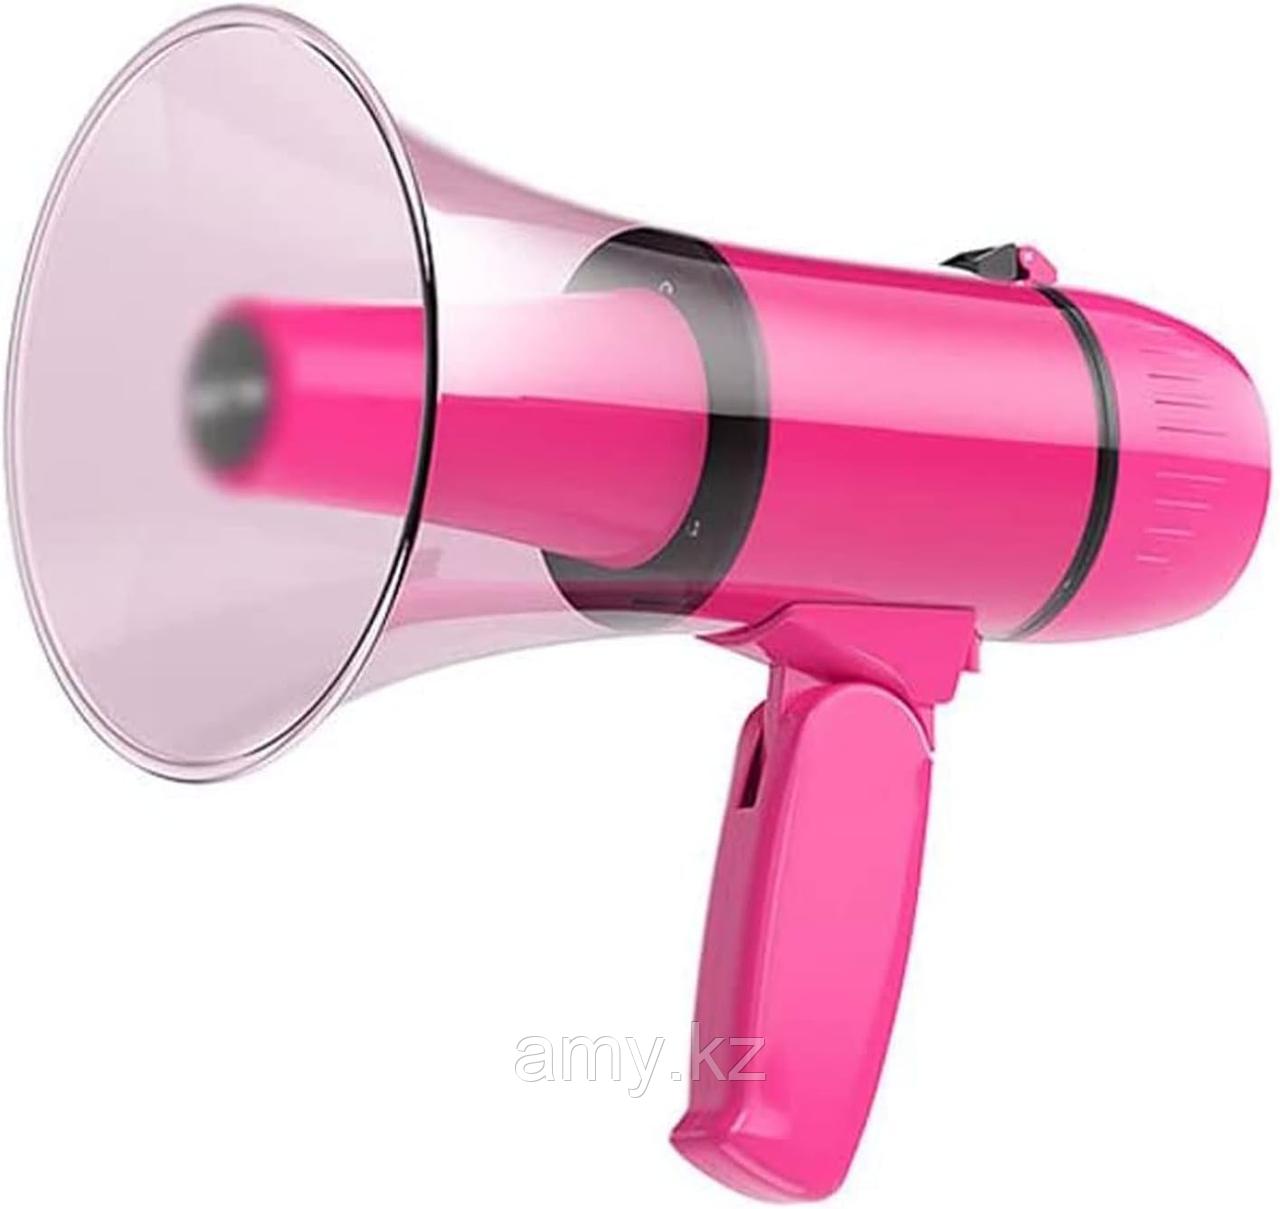 Громкоговоритель ручной Sast K5 pink рупор / мегафон